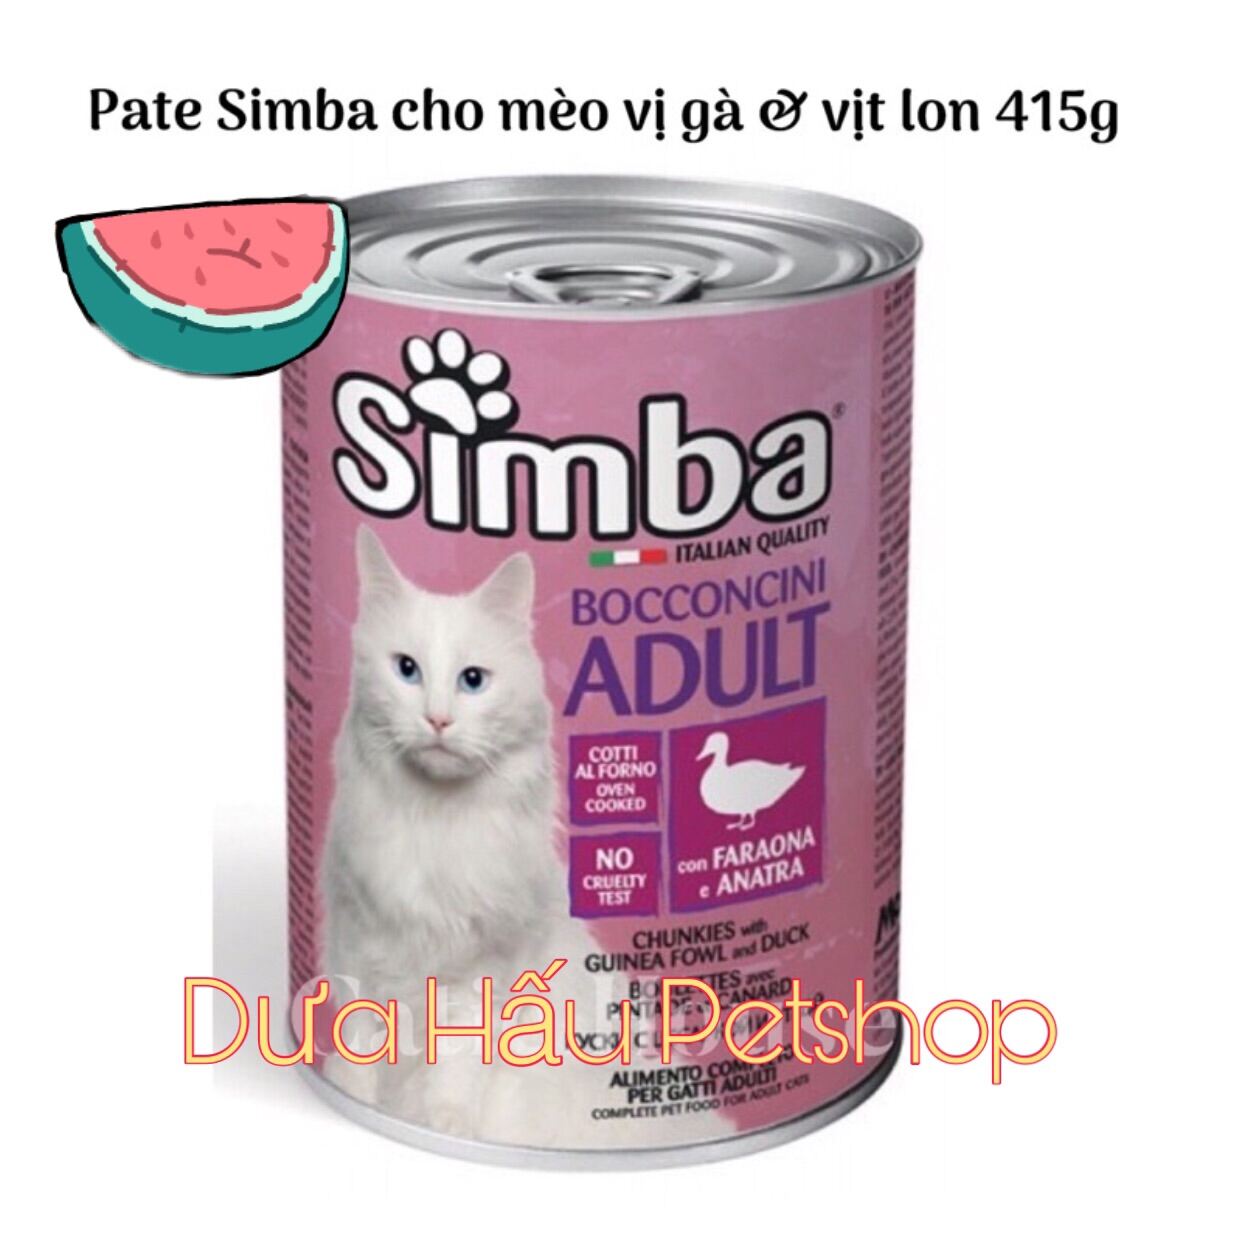 HOT Pate Ý dạng lon cho mèo Simba 415g - Dưa Hấu Petshop thumbnail